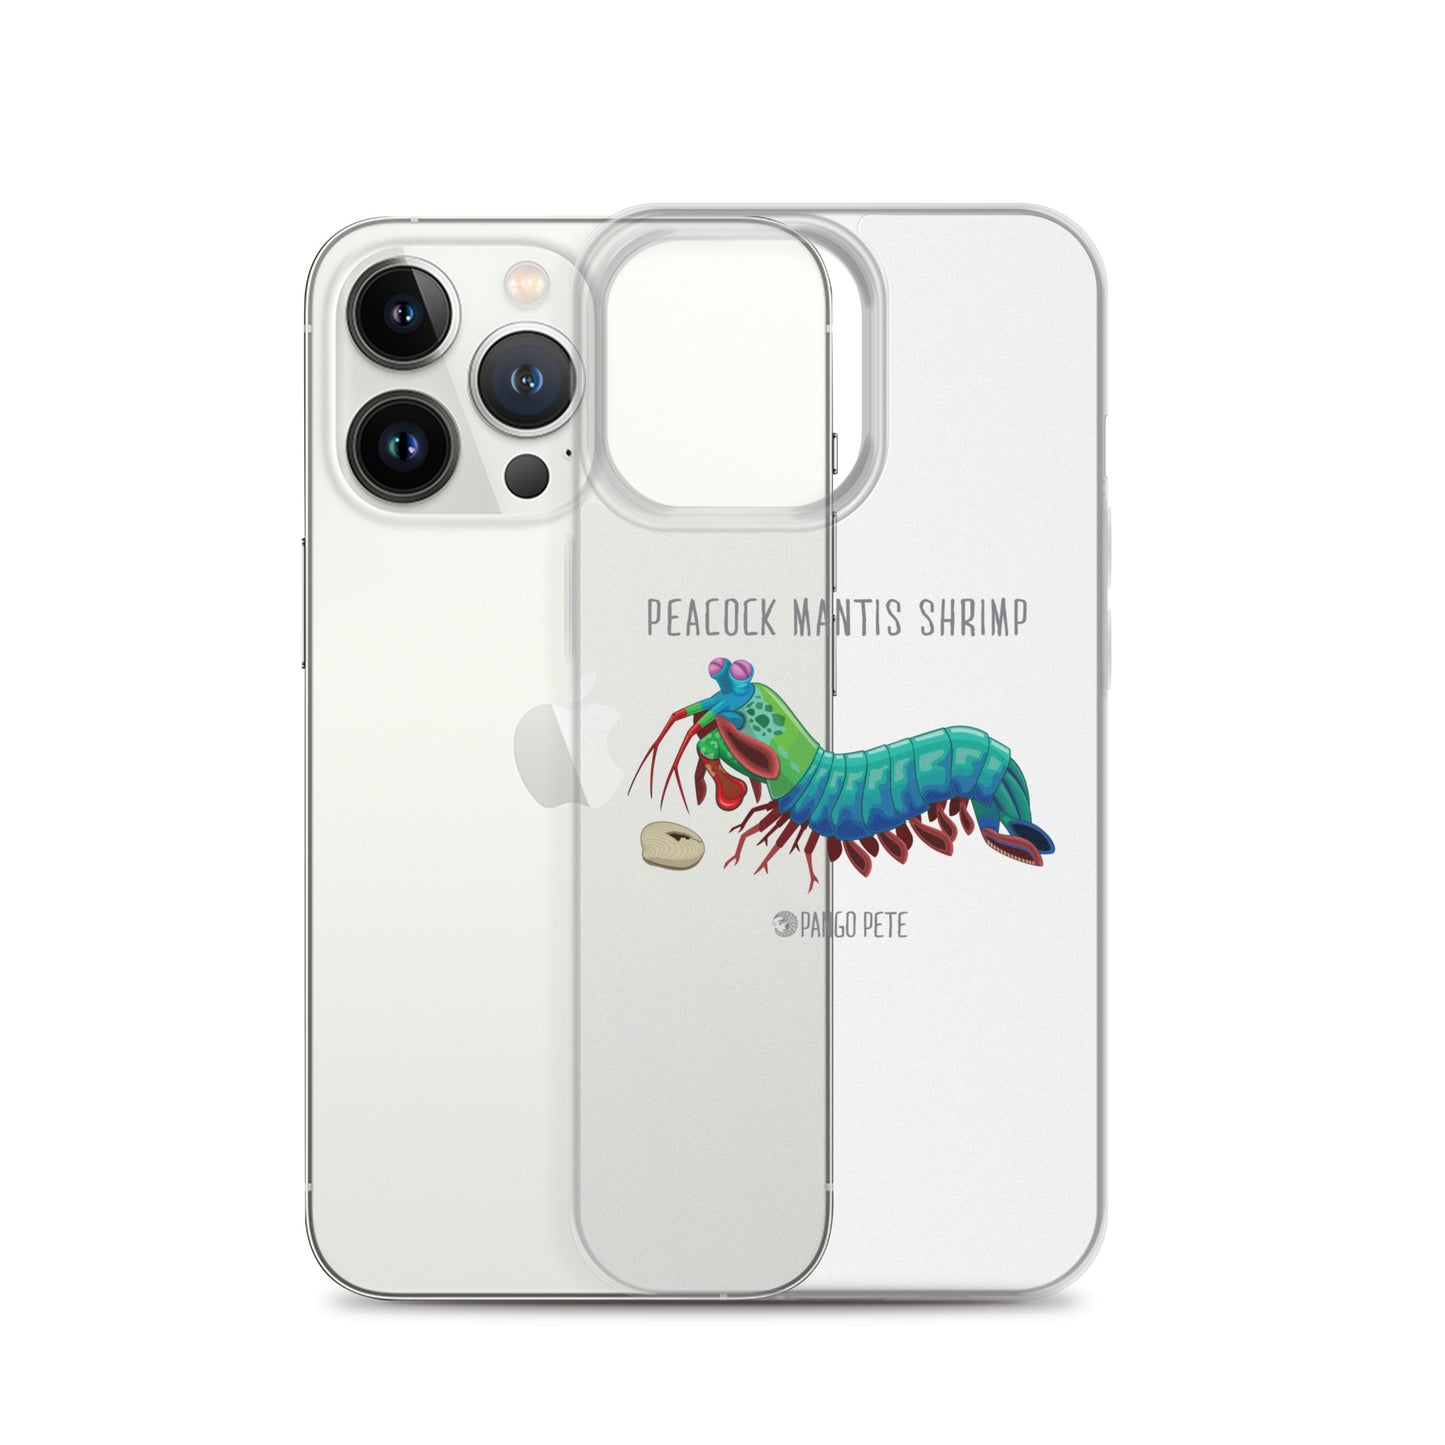 Peacock Mantis Shrimp iPhone Case